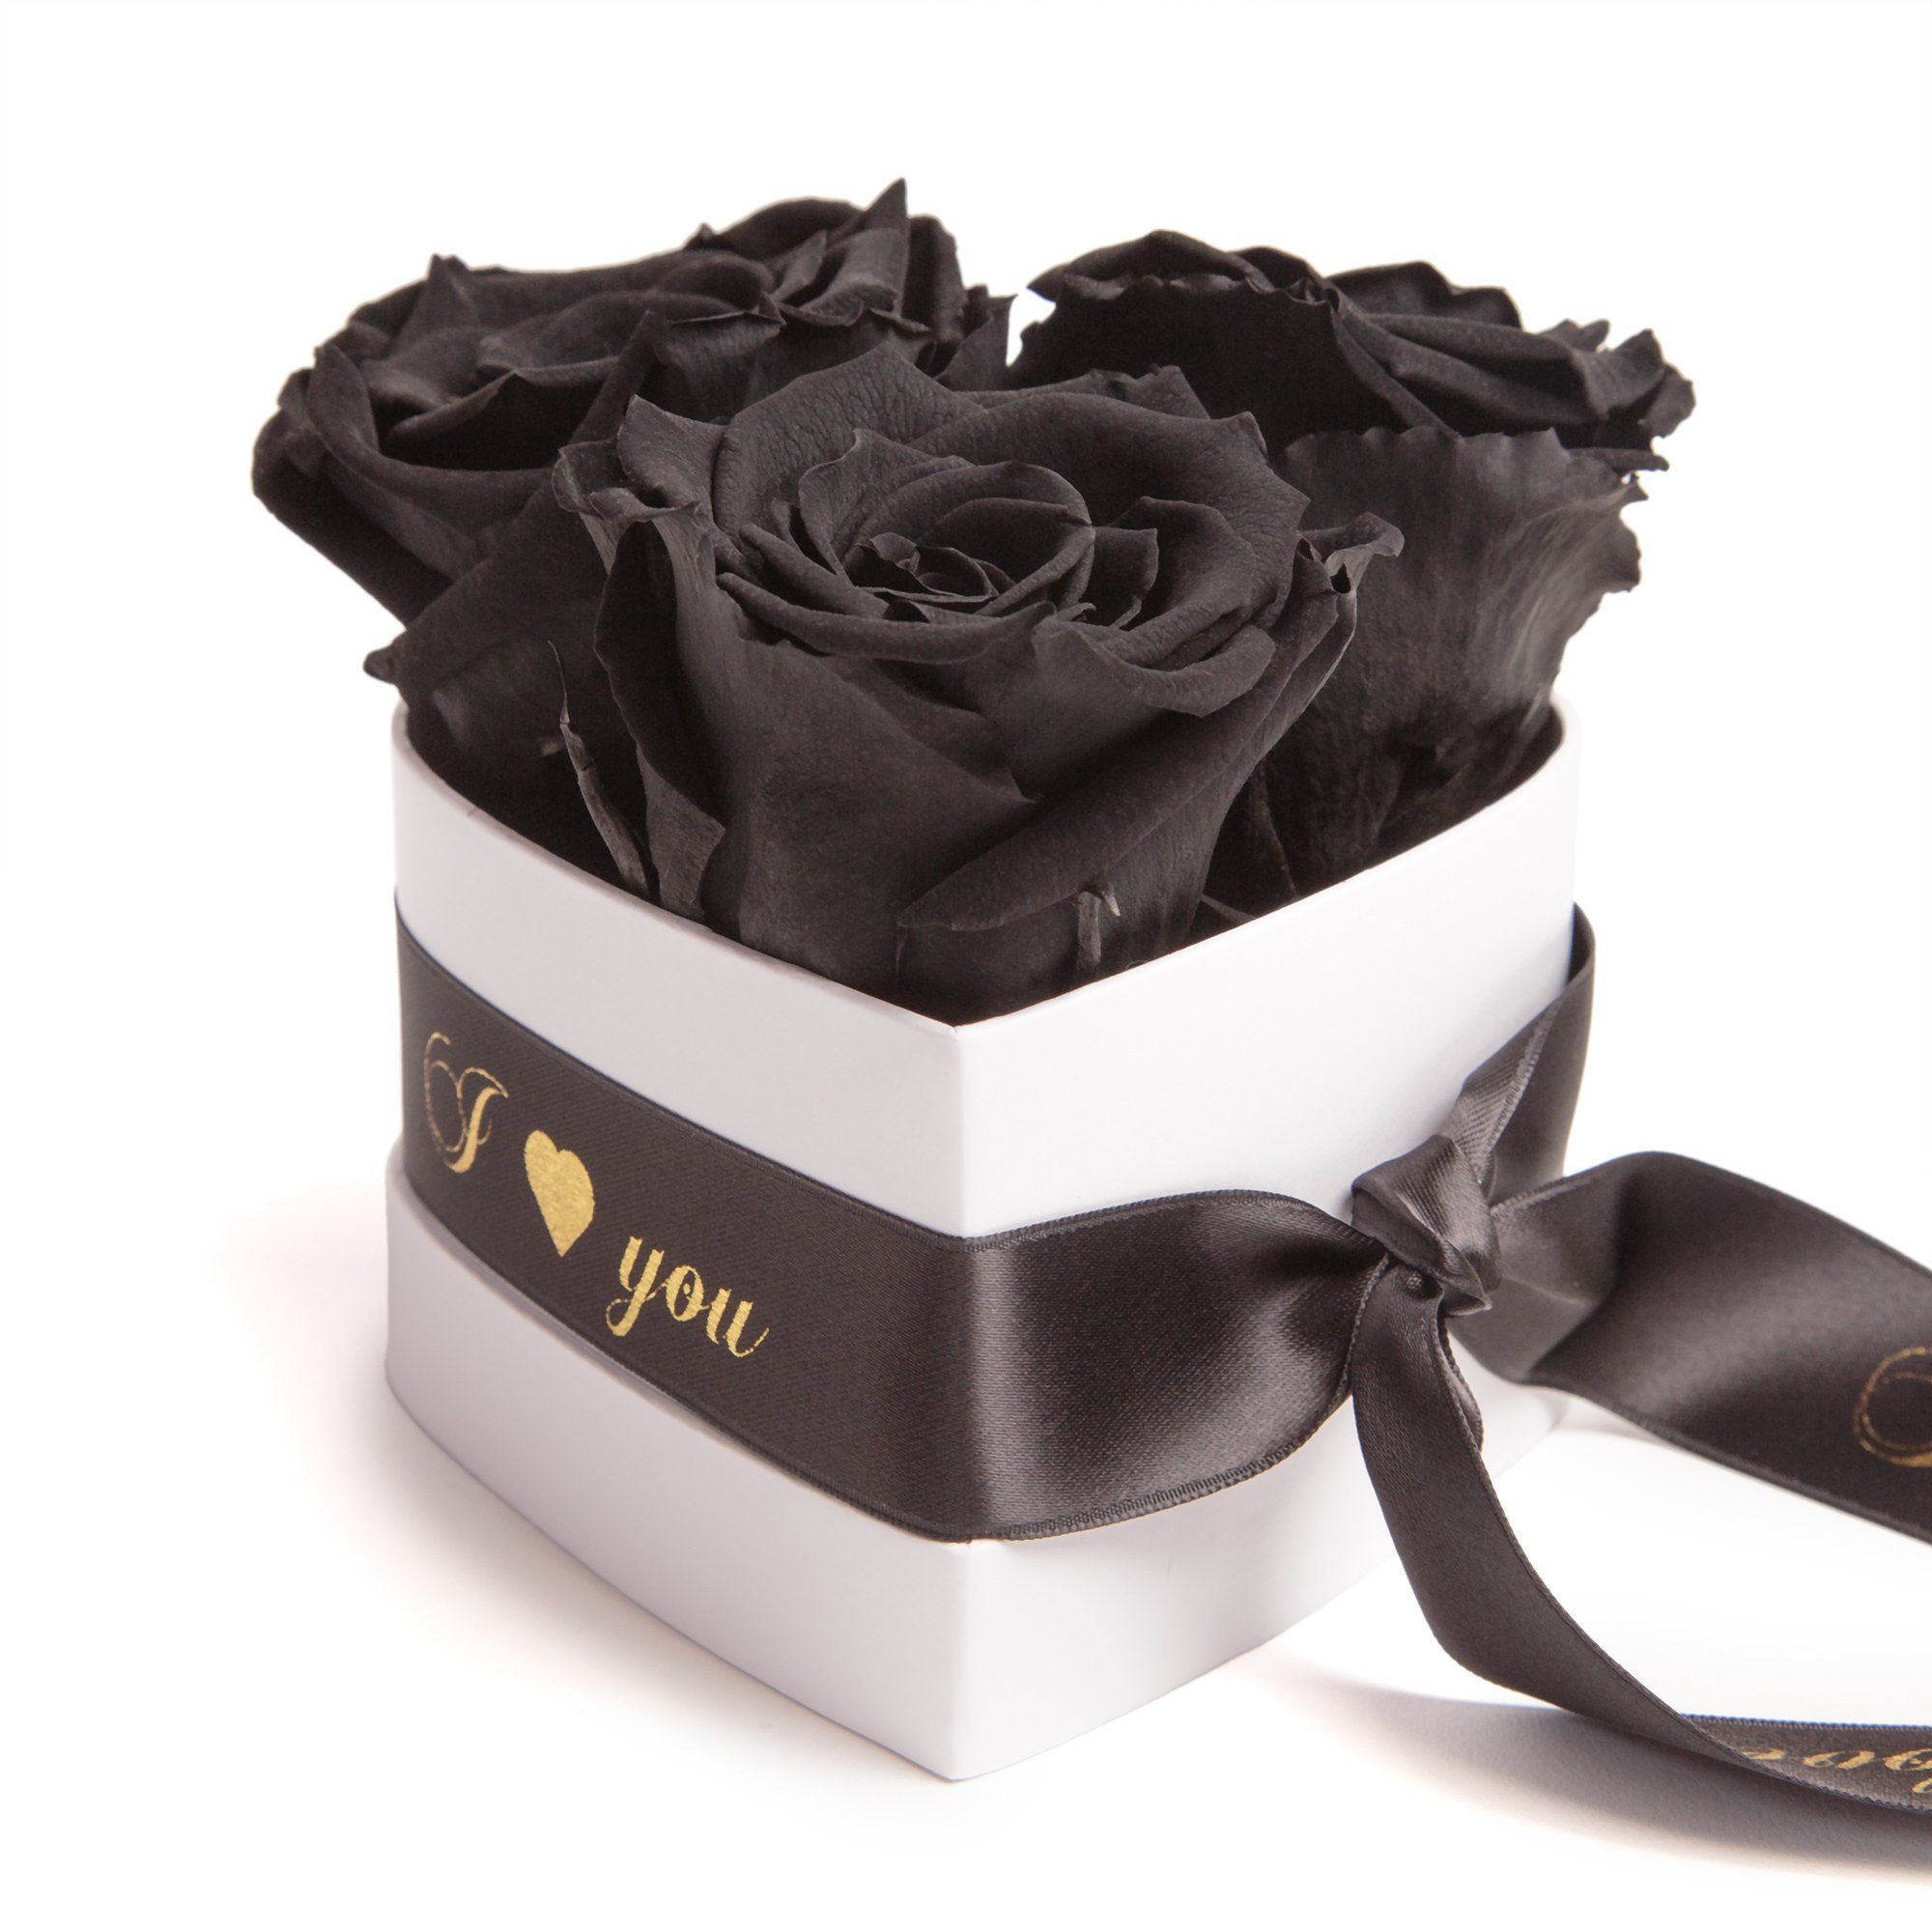 Kunstblume Rosenbox Herz 3 konservierte Infinity Rosen in Box I Love You Rose, ROSEMARIE SCHULZ Heidelberg, Höhe 8.5 cm, Valentinstag Geschenk für Sie Schwarz | Kunstblumen